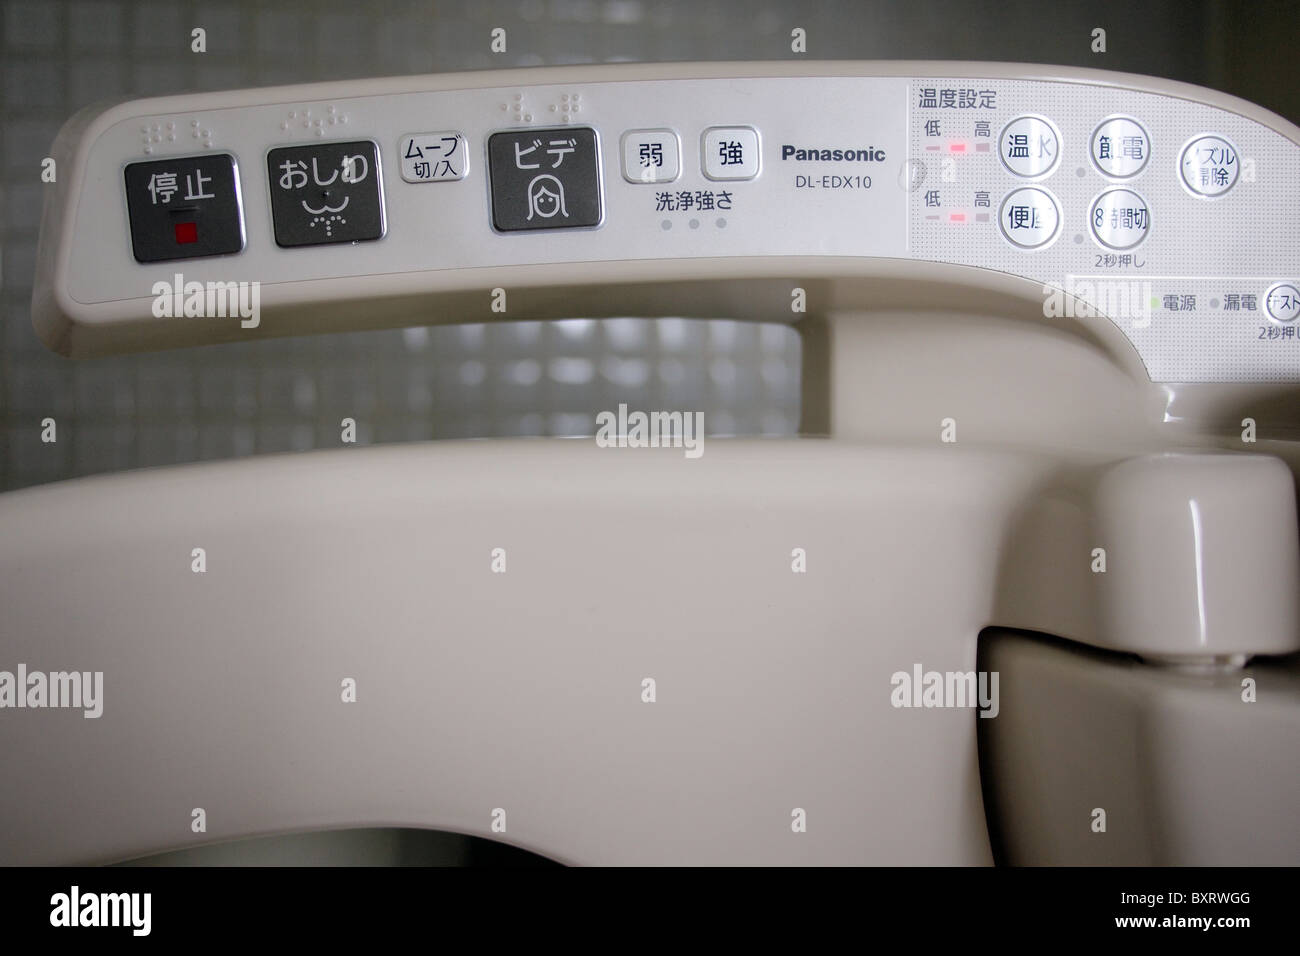 Salut-technologie électronique moderne toilettes japonais au Japon Asie Banque D'Images